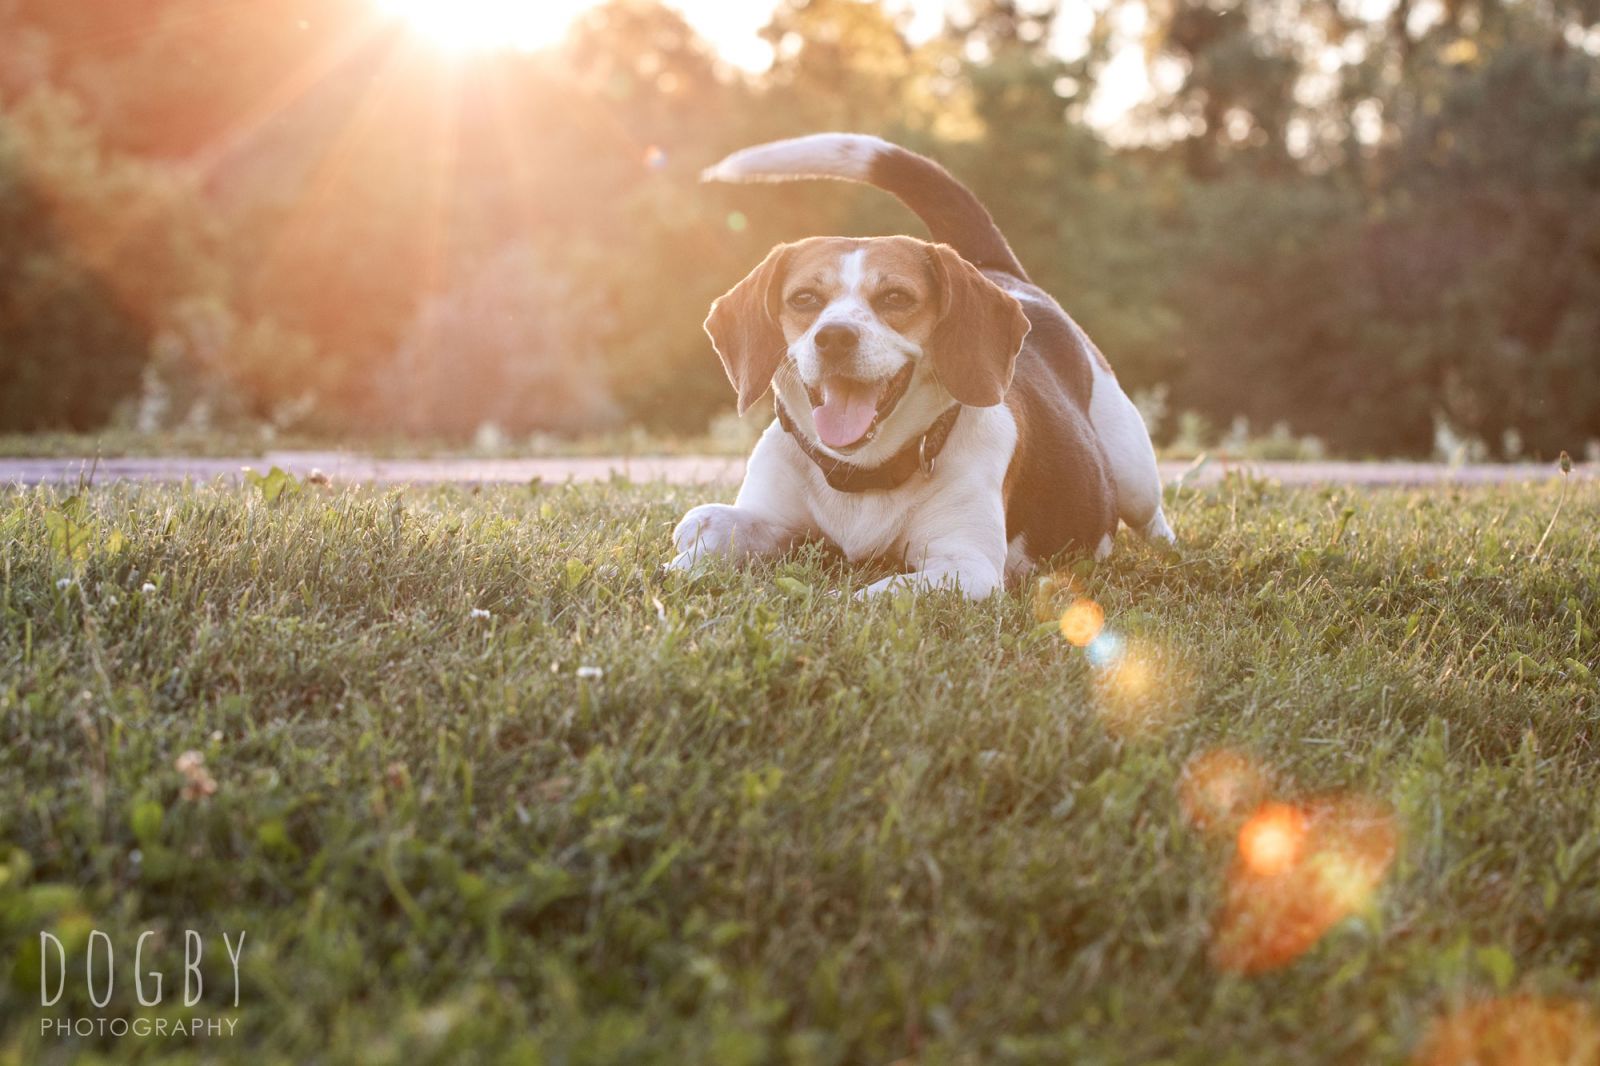 Beagle dog on grass with sun flare